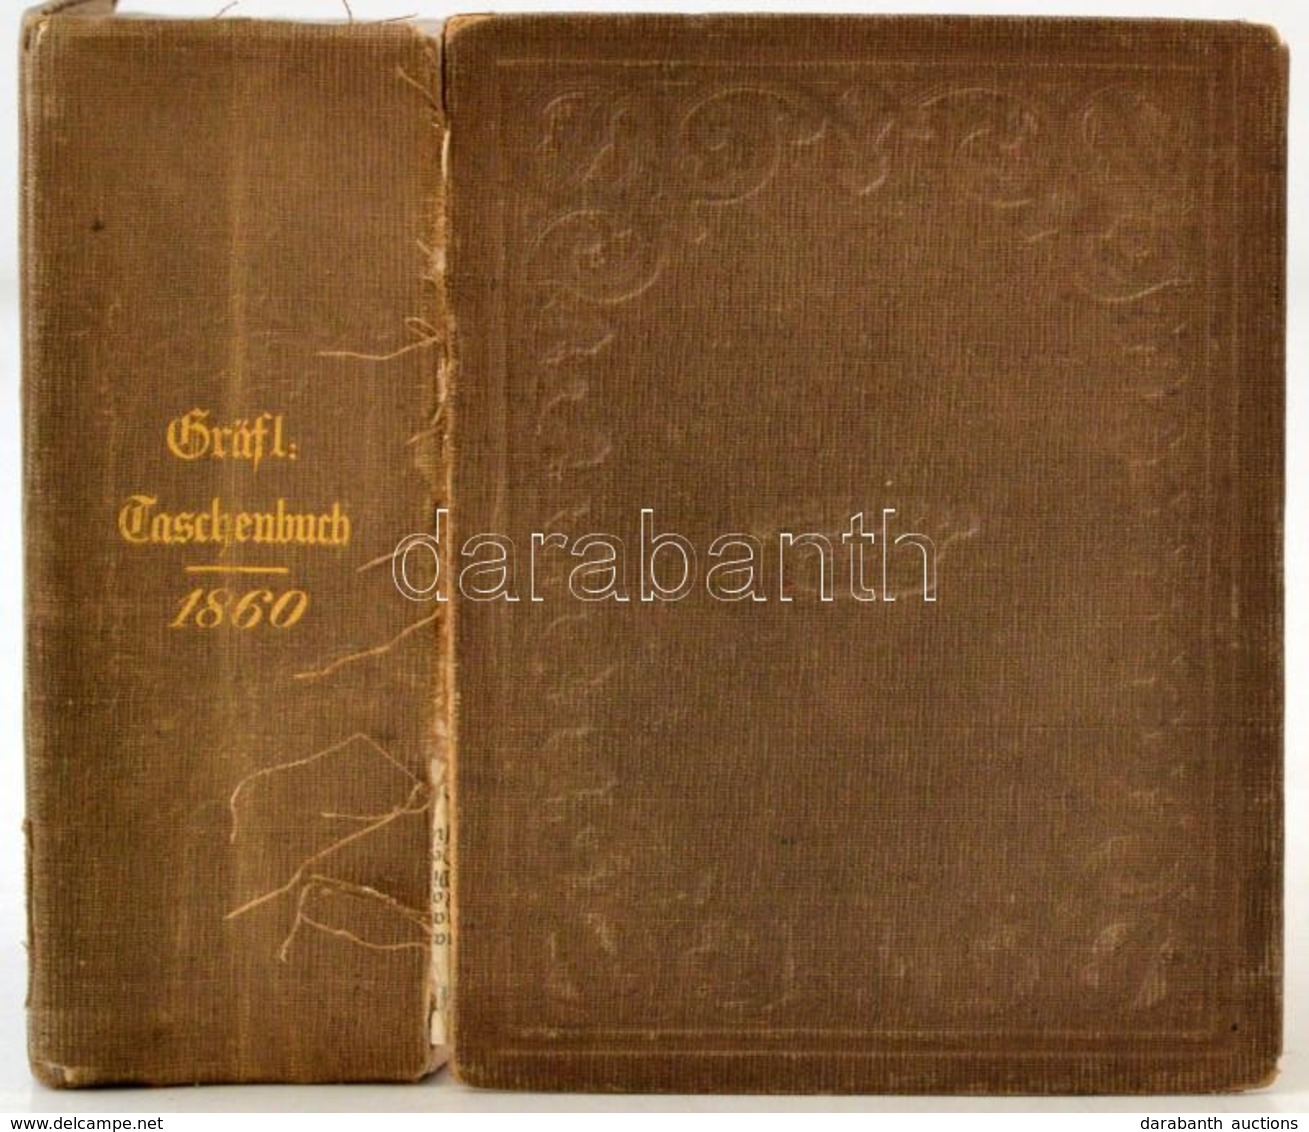 Gotaisches Genealogisches Taschenbuch Der Gräflichen Häuser Aus Das Jahr 1860. Gotha, 1860, Justus Perthes, 996 P. 33. é - Non Classés